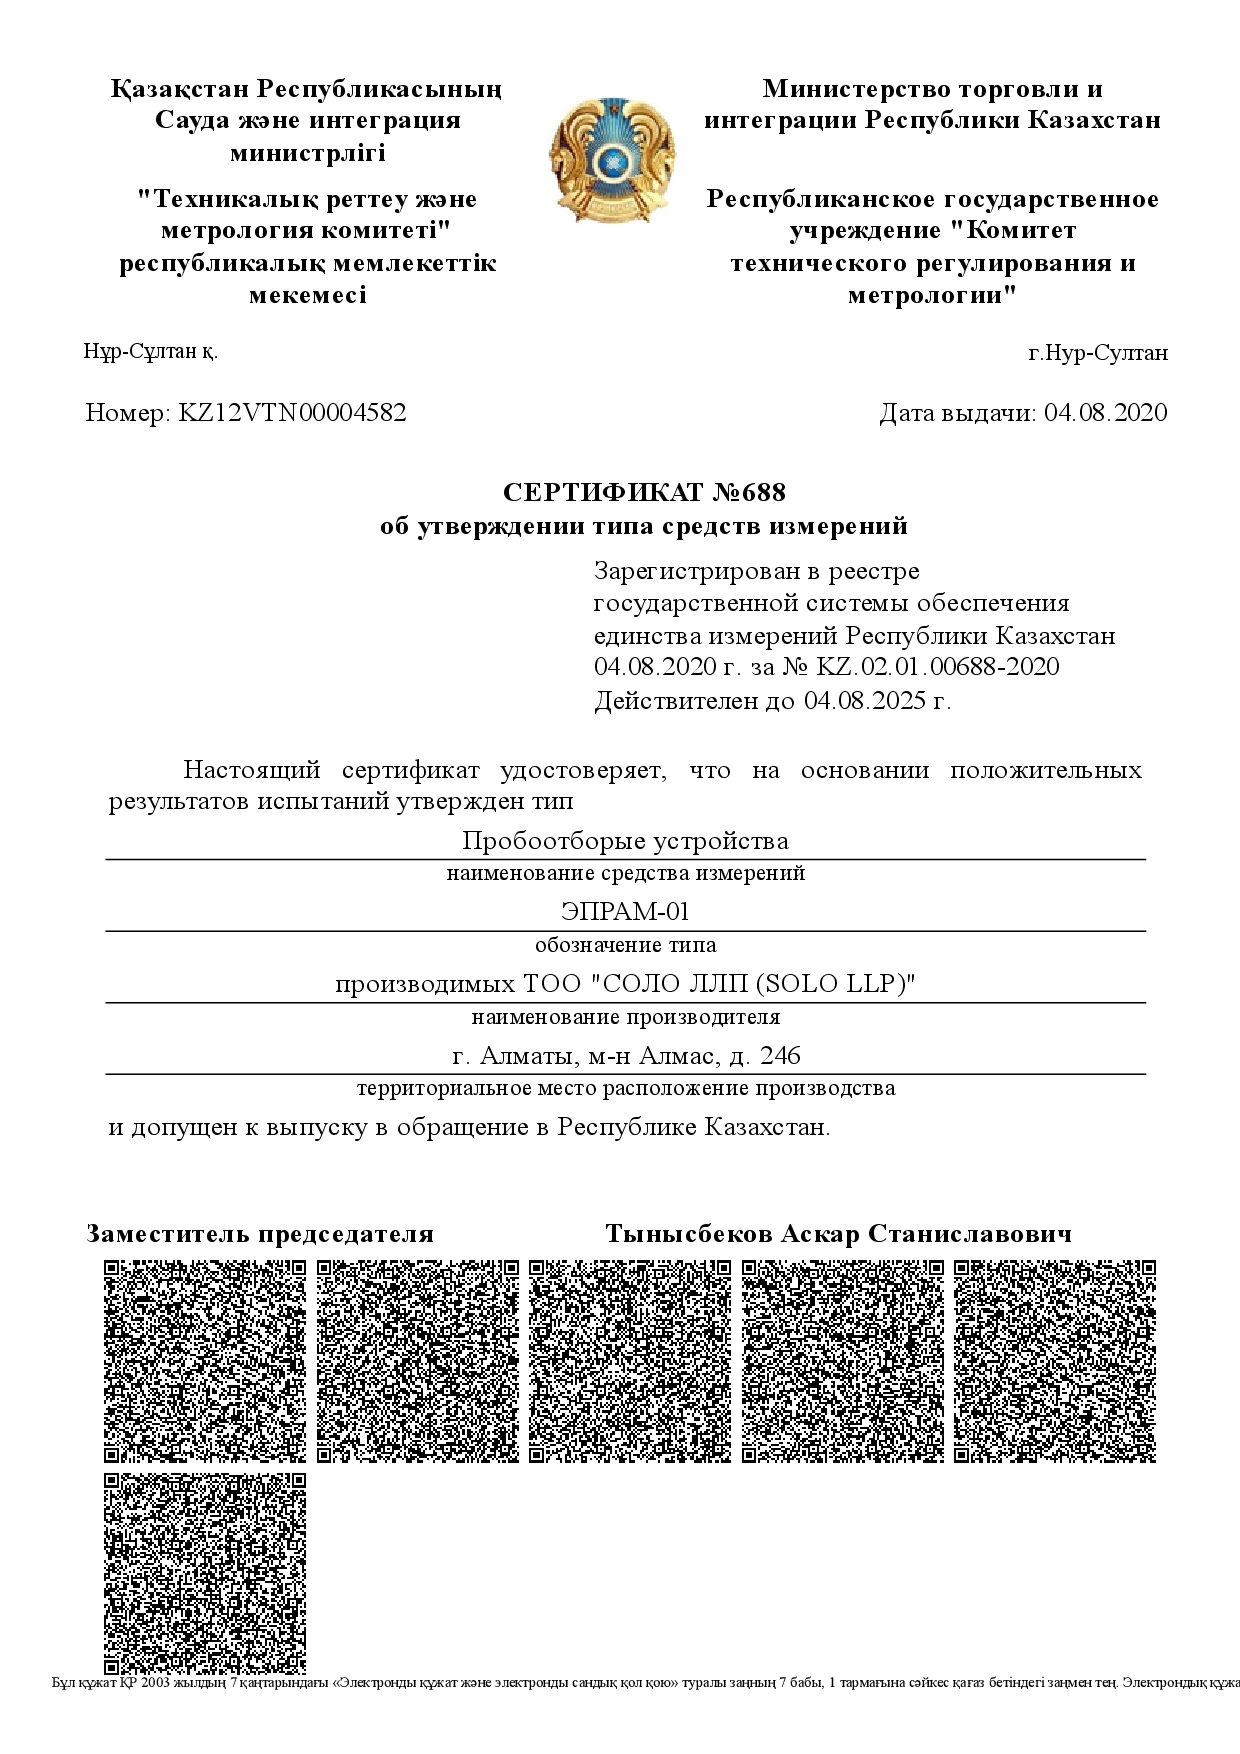 Сертификат об утверждении типа ЭПРАМ-01